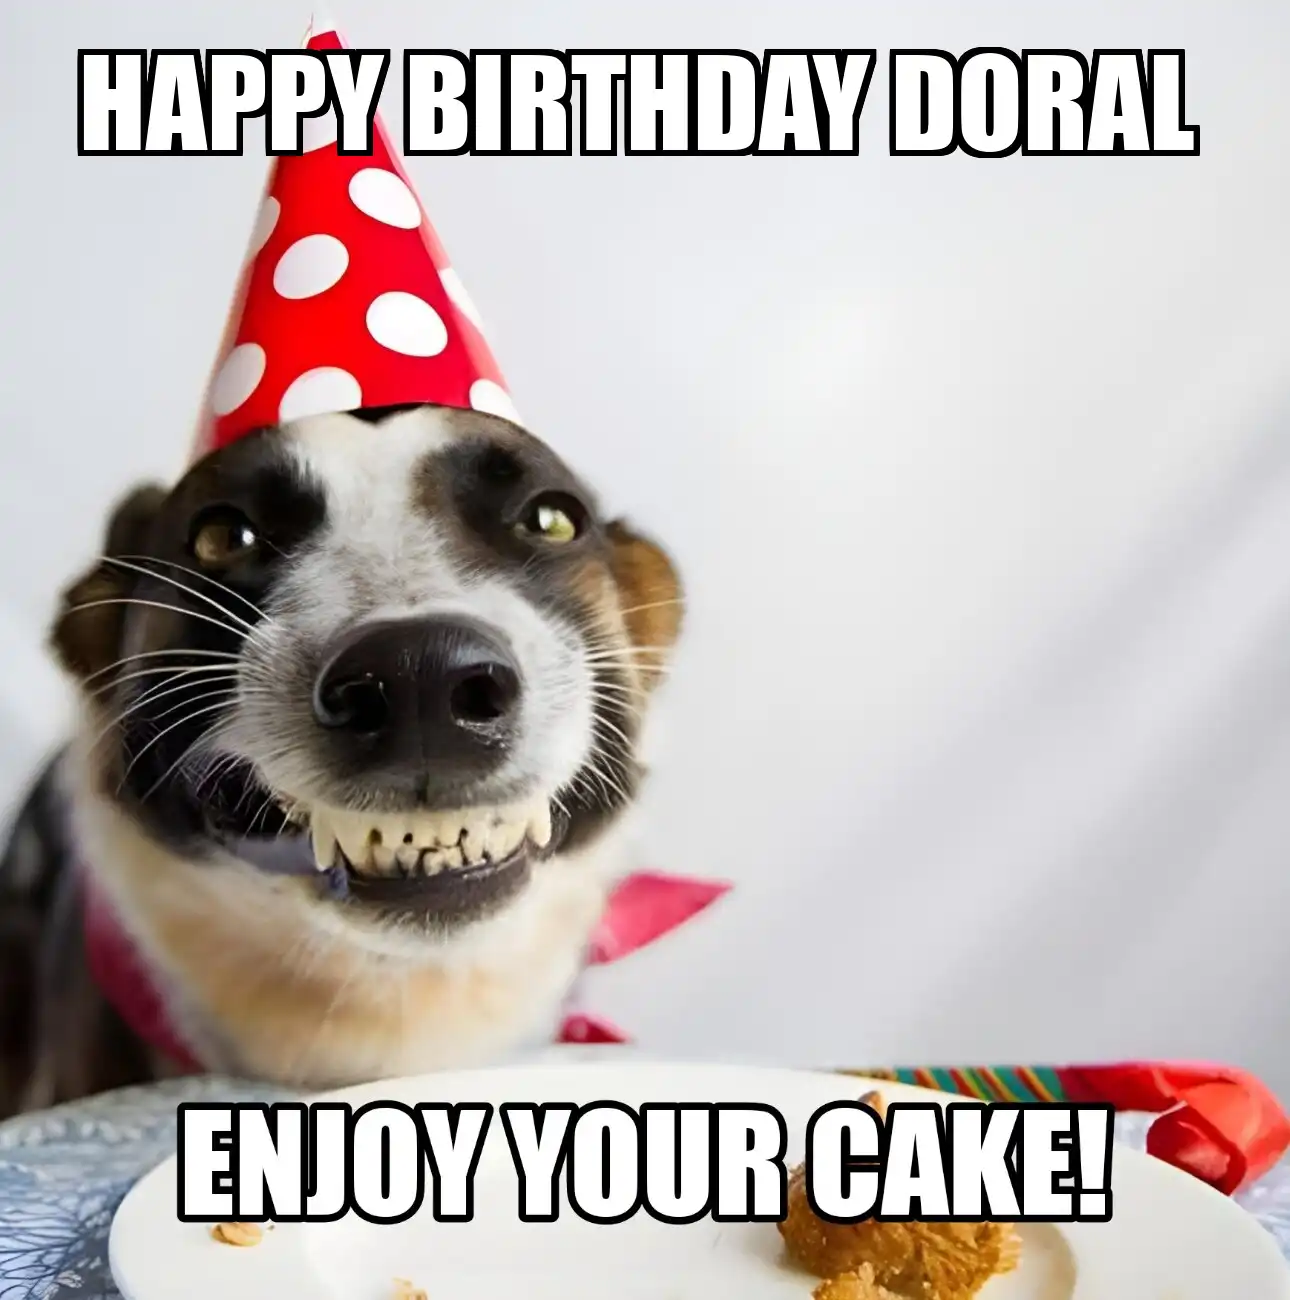 Happy Birthday Doral Enjoy Your Cake Dog Meme